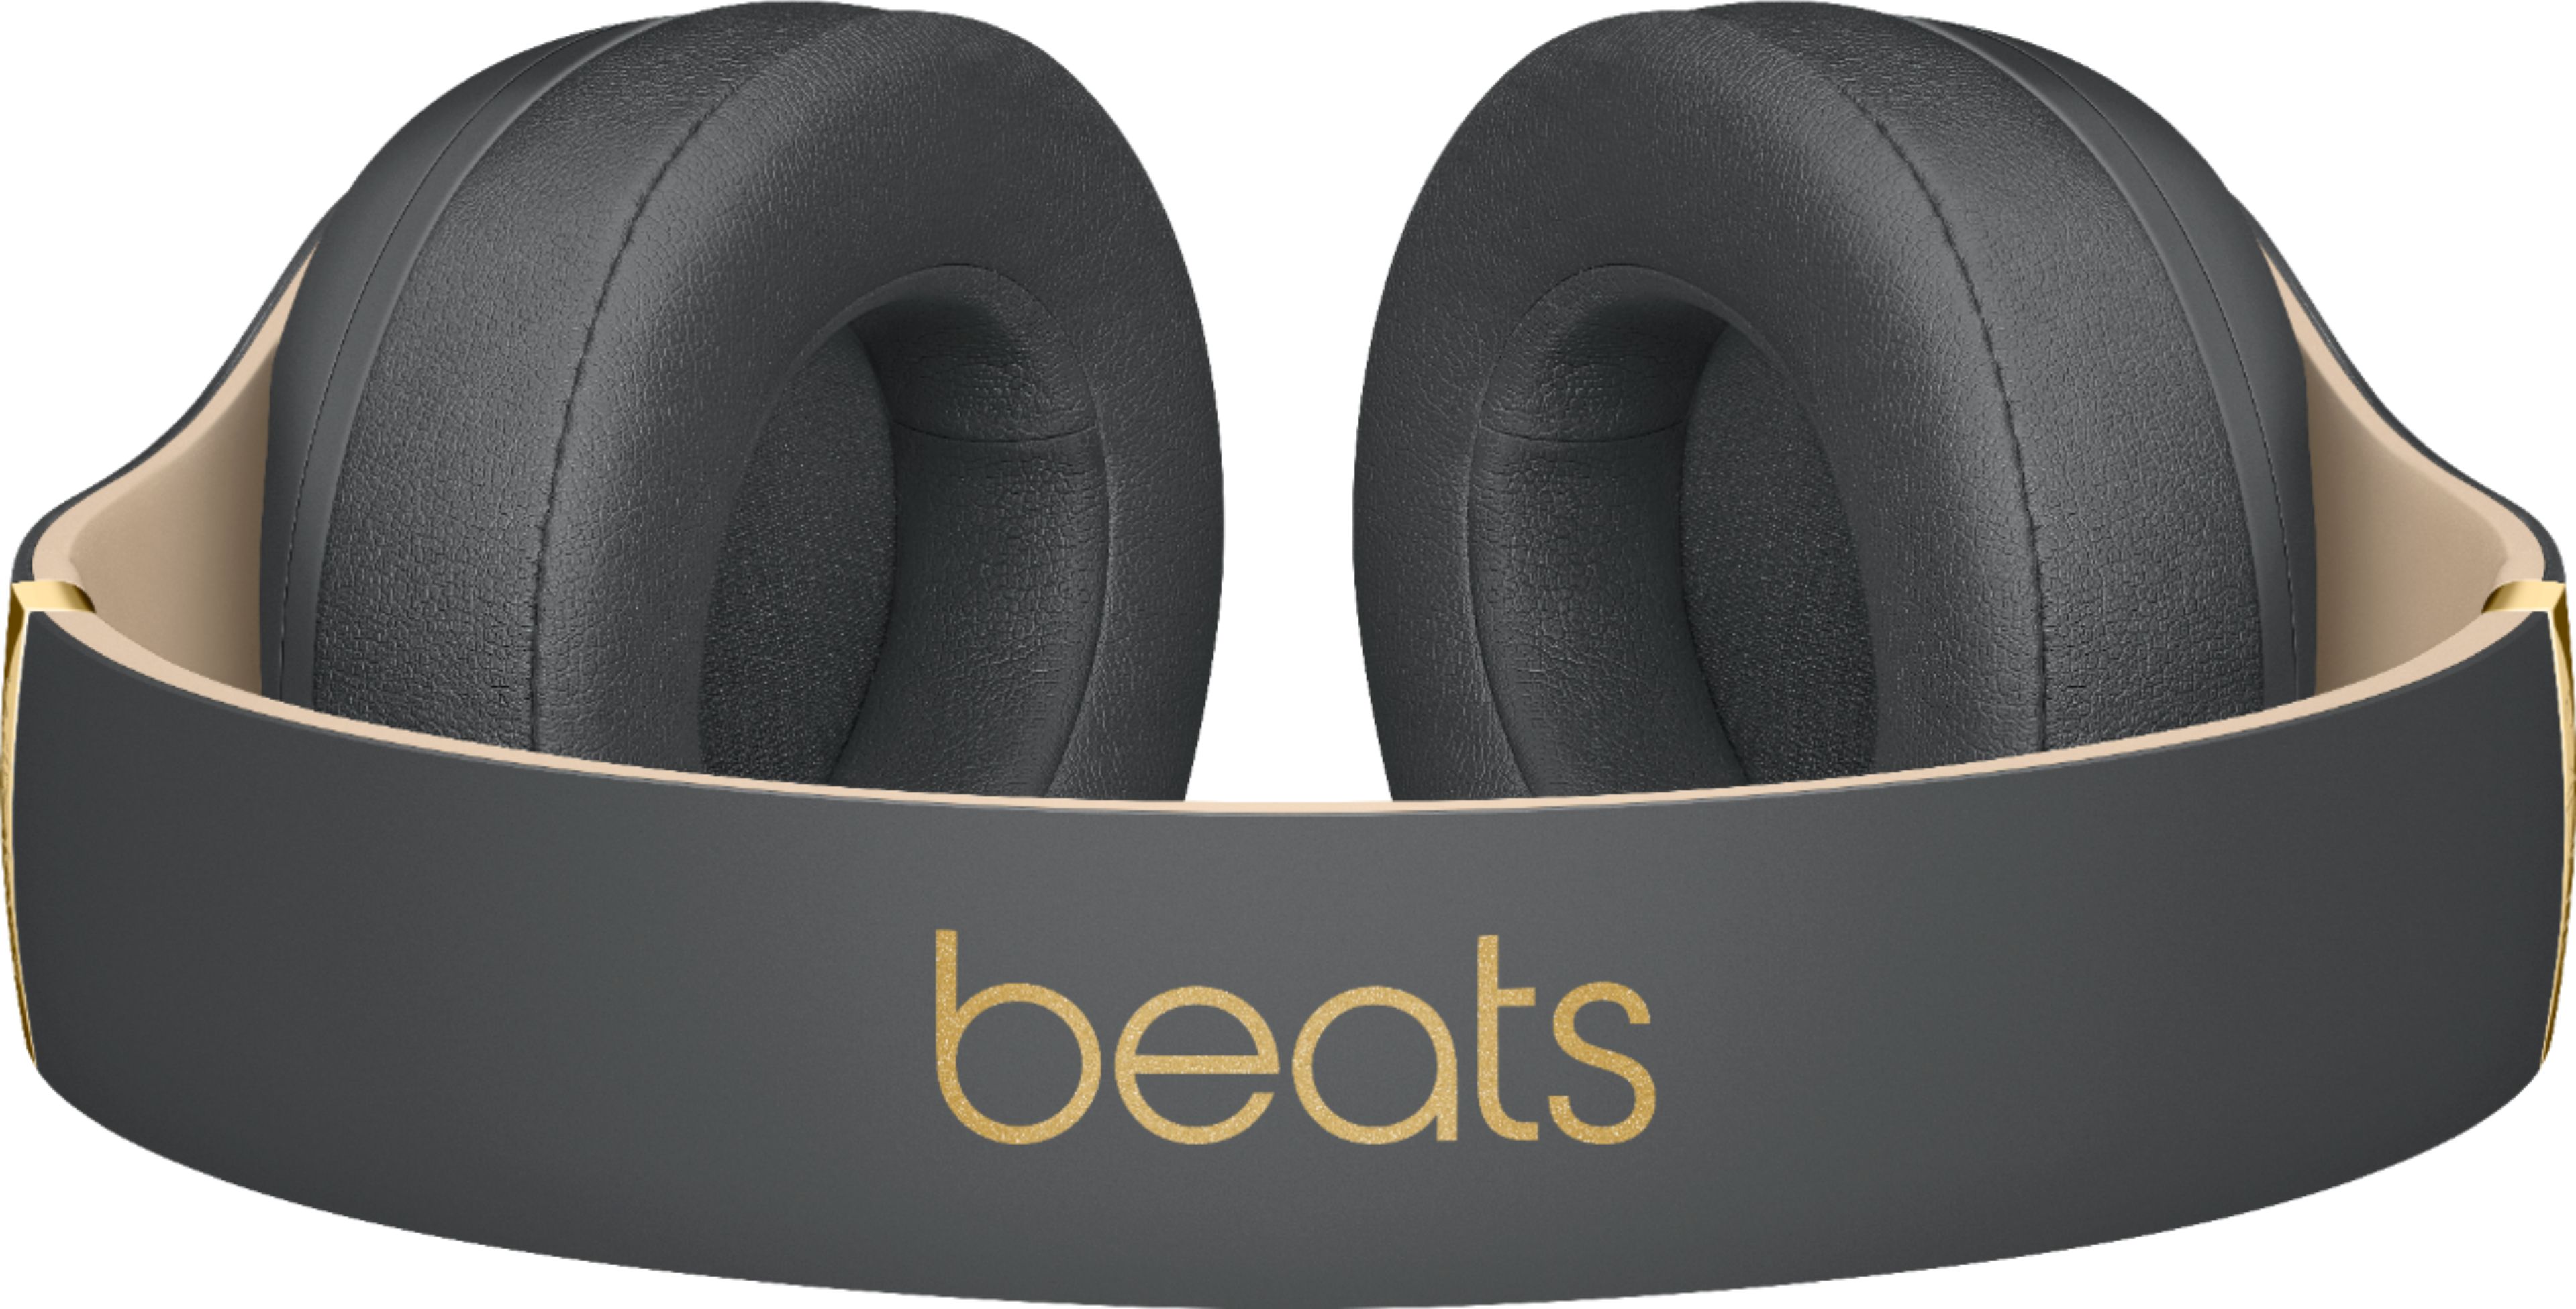 オーディオ機器 ヘッドフォン Beats by Dr Dre BEATS STUDIO3 ヘッドフォン オーディオ機器 家電 